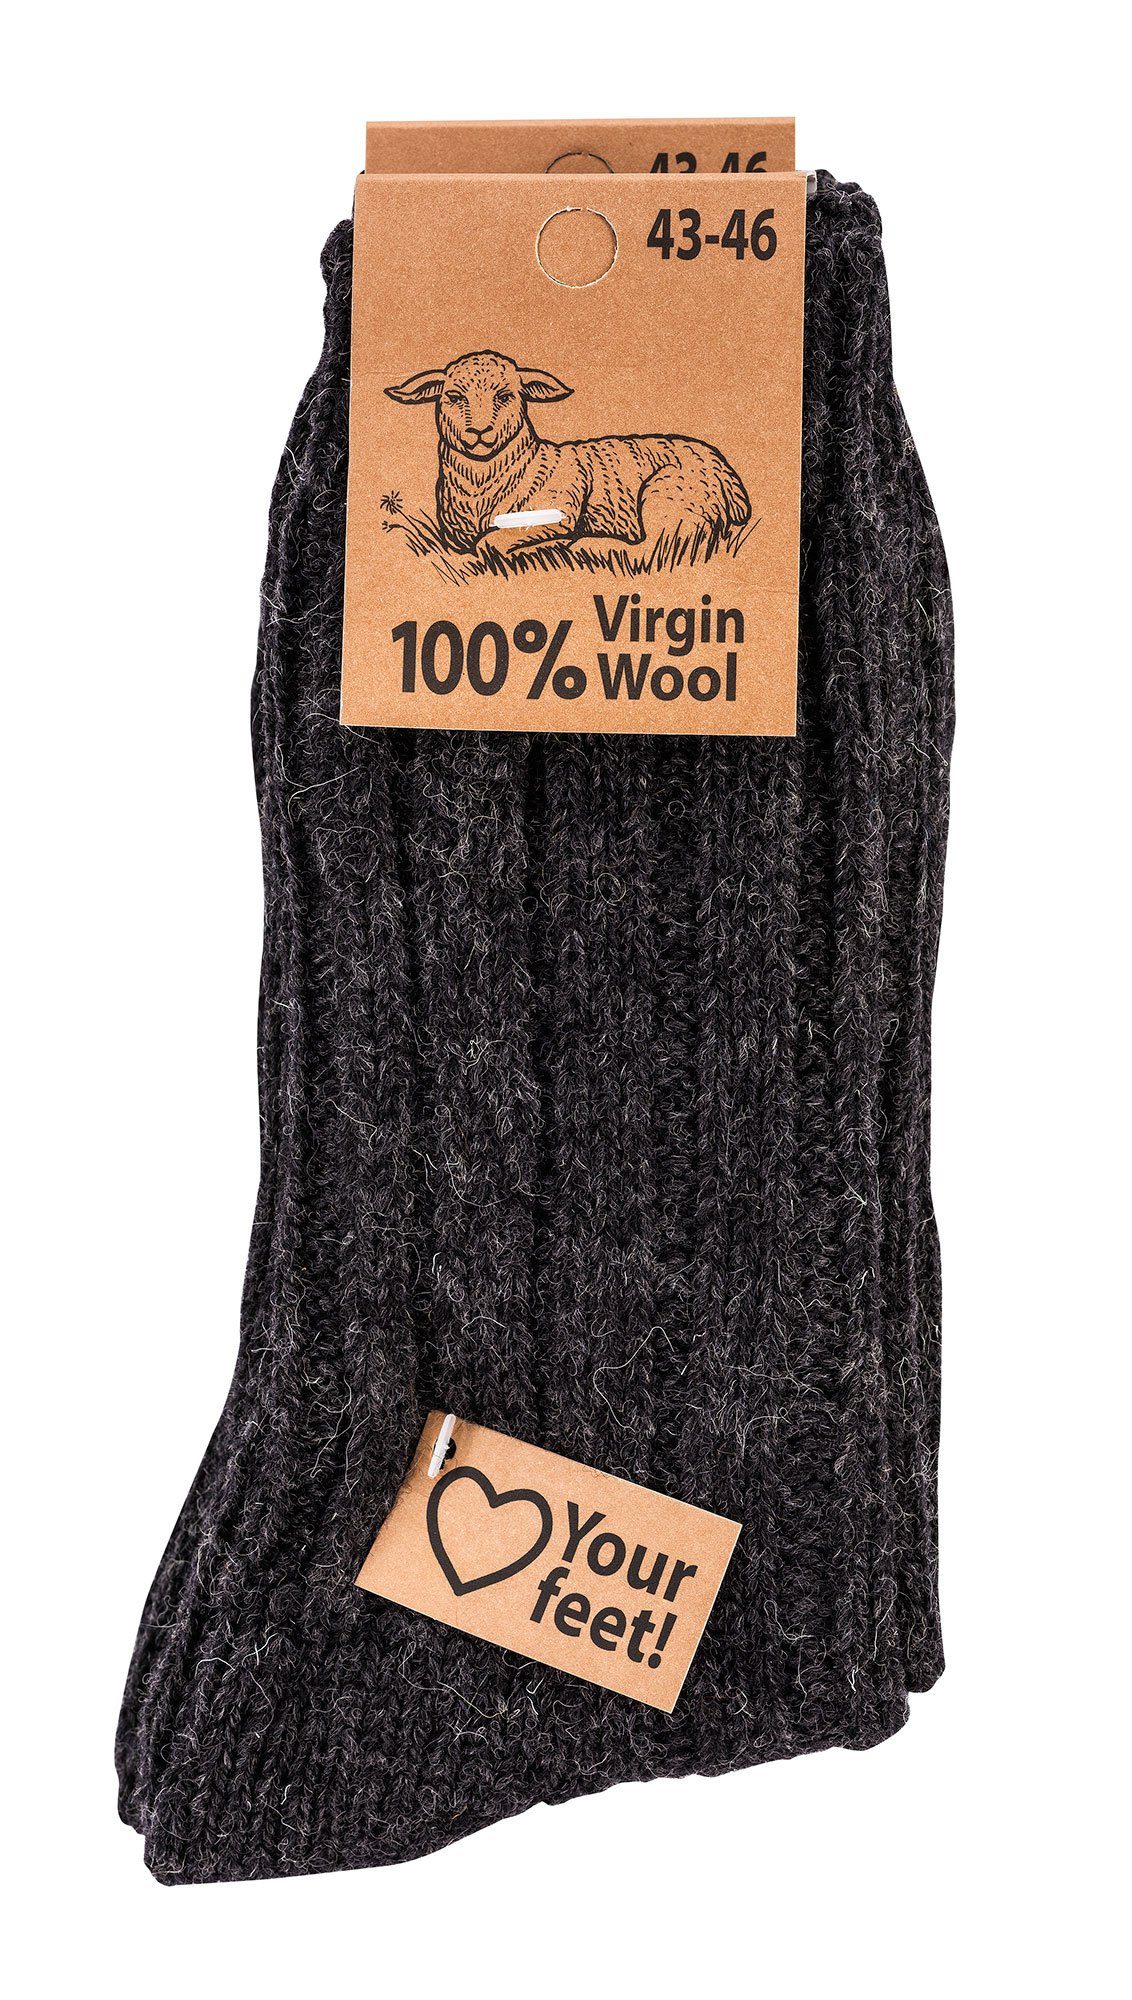 Socks 4 Fun Wowerat Socken Wool" (2 Paar) Warme 100% Grobstrick anthrazit Wollsocken Schafwolle "Virgin